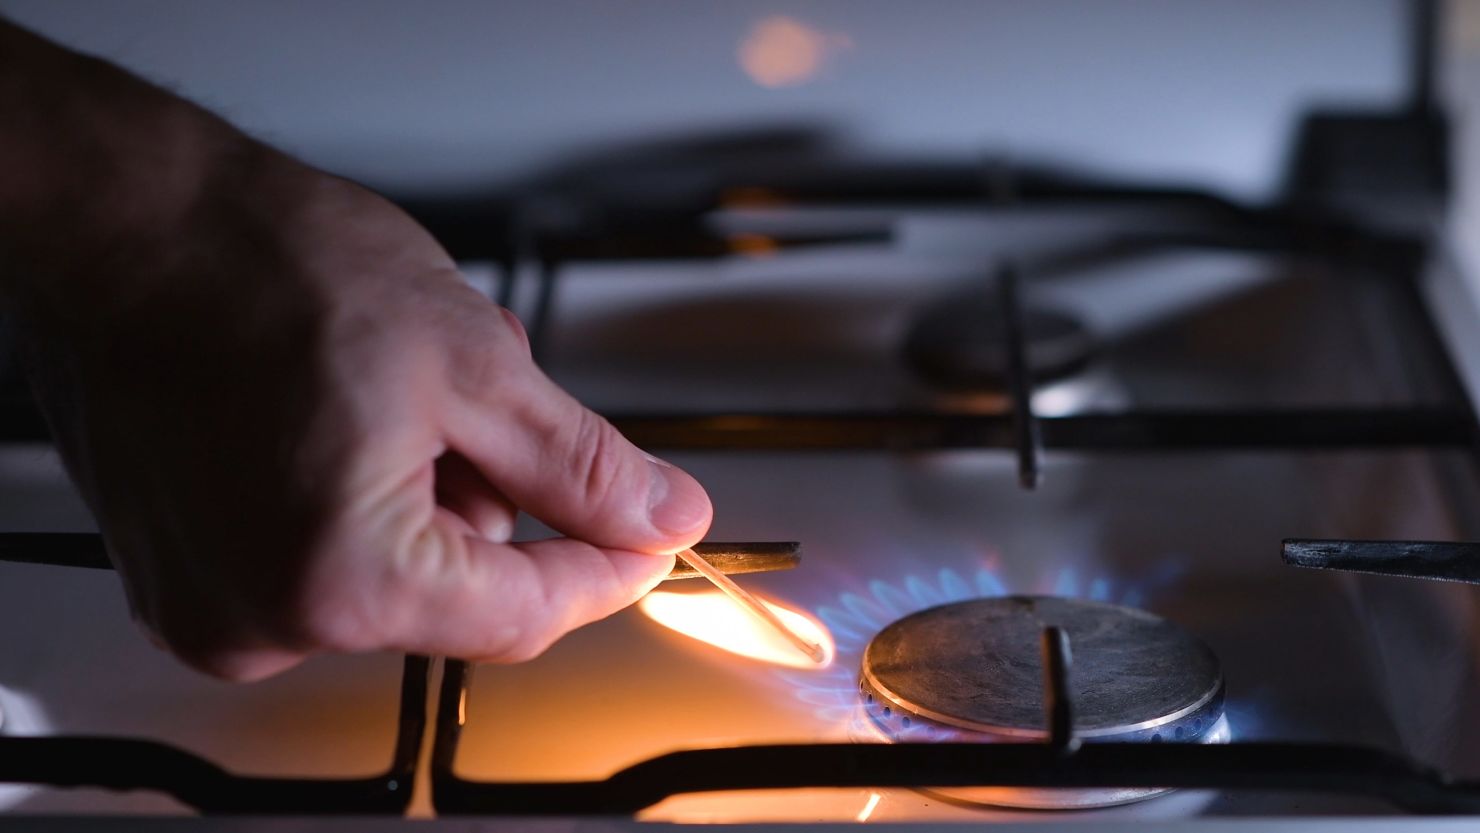 Federal regulator says gas stoves won't be taken away